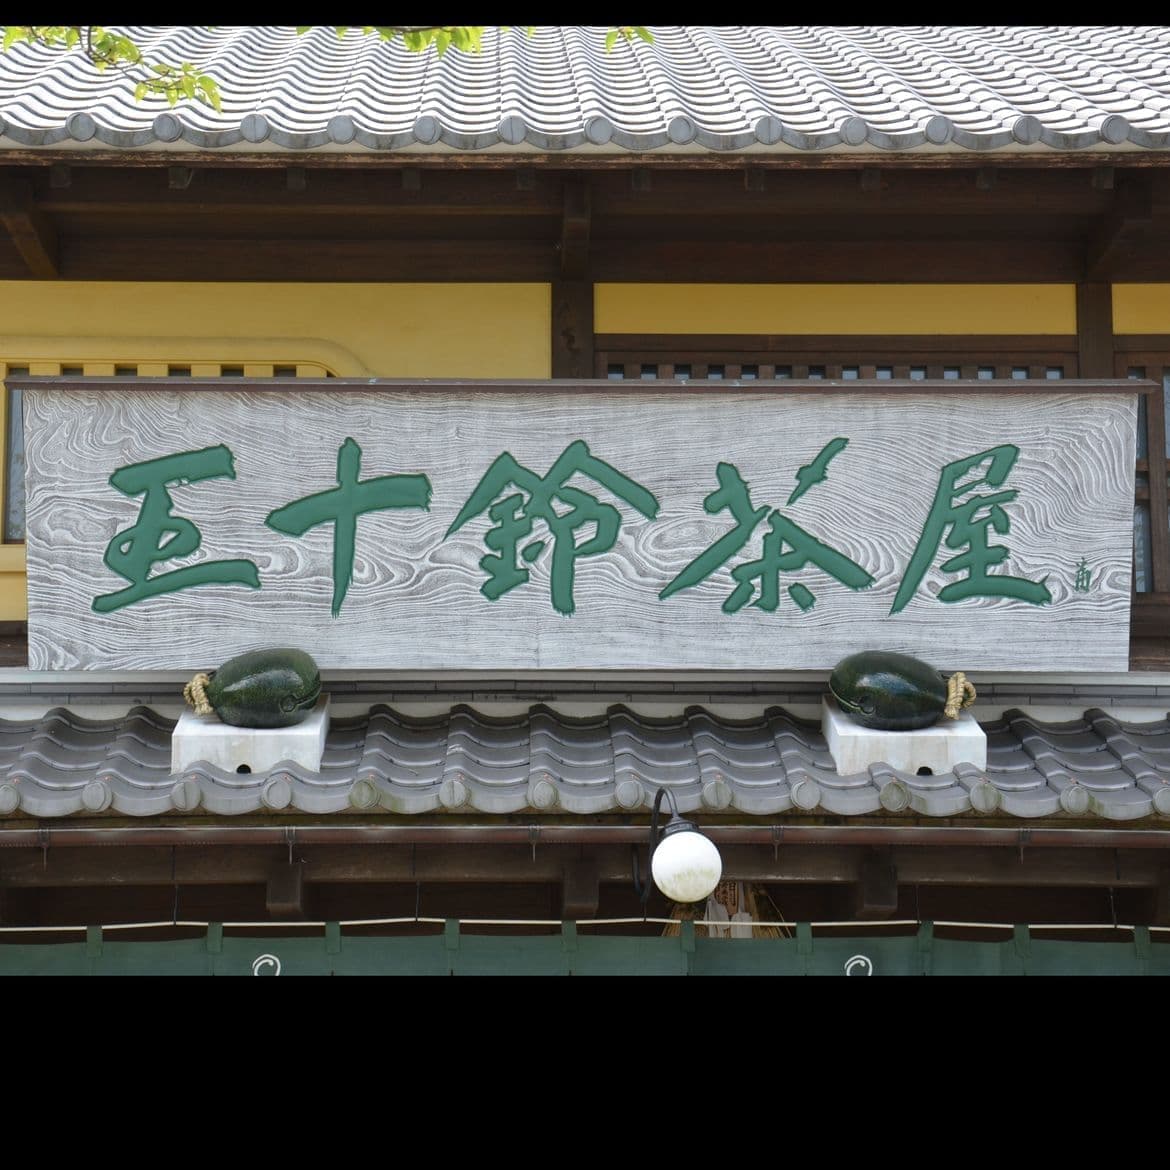 入り口の上に木目を加工して白くしてある木の看板で文字は緑青、和風を感じさせる